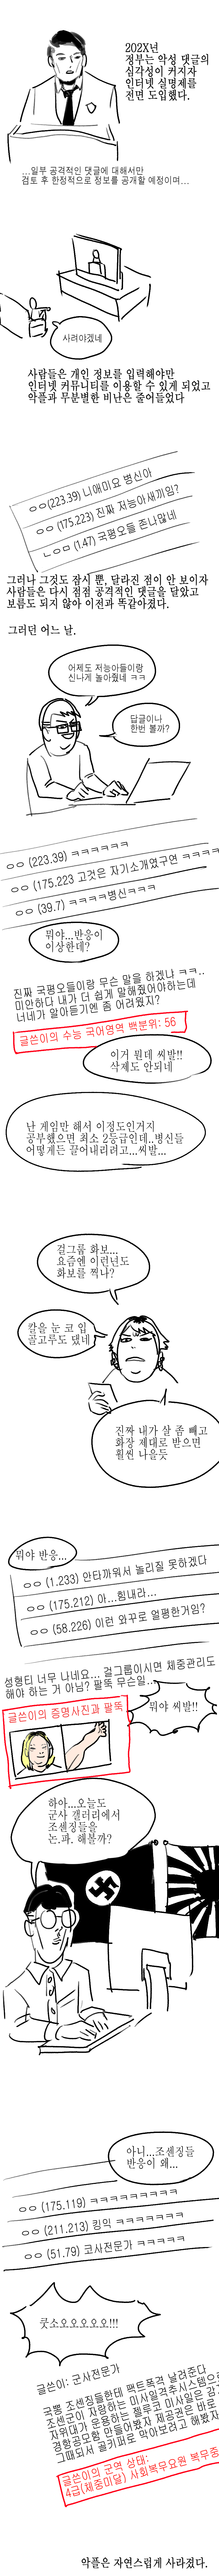 인터넷 신상공개제도 도입되는 만화.manhwa